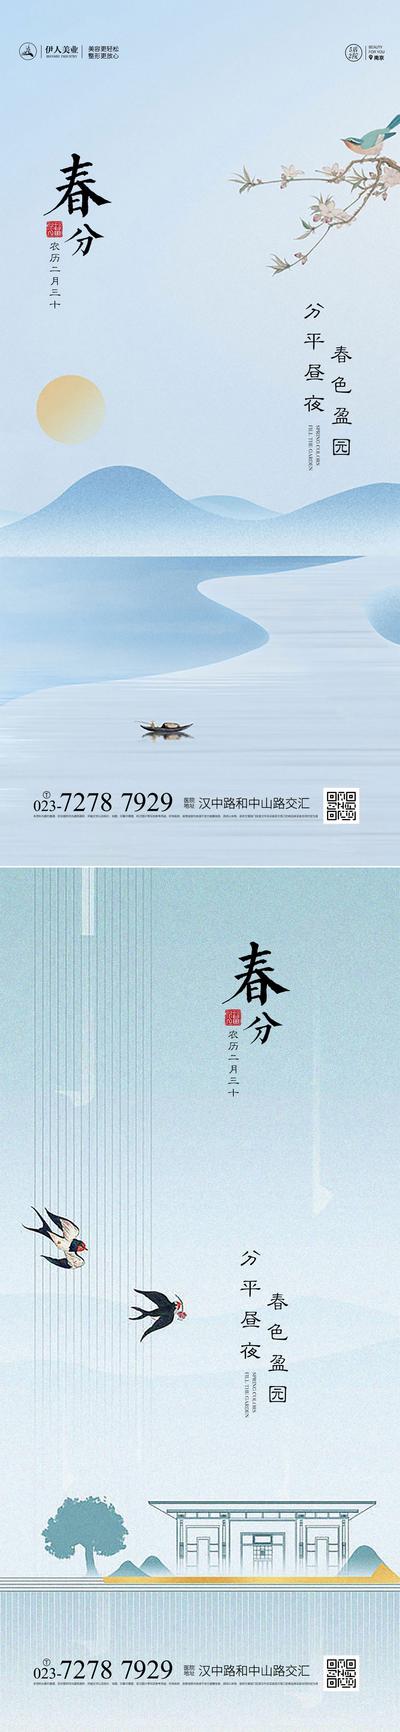 南门网 广告 海报 二十四节气 春分 系列 简约